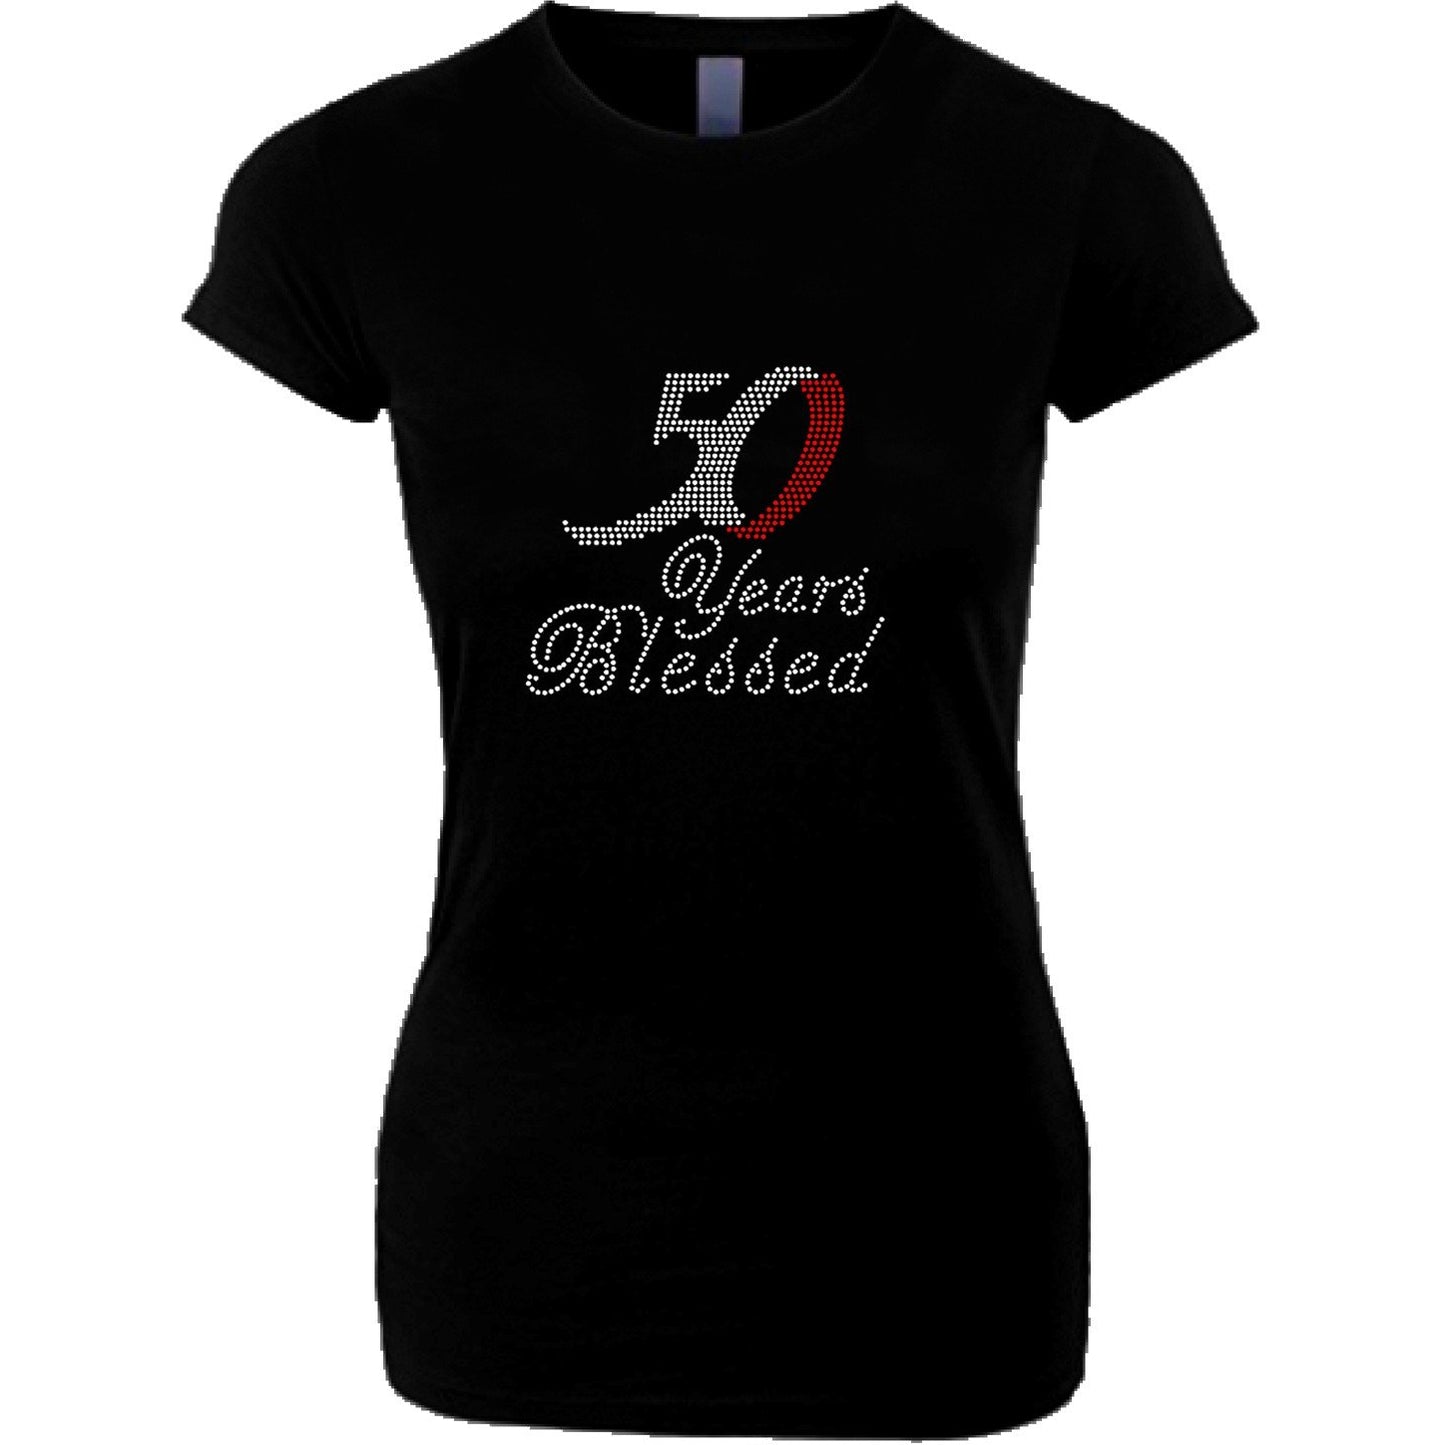 50 Years Blessed Rhinestone Birthday T Shirt